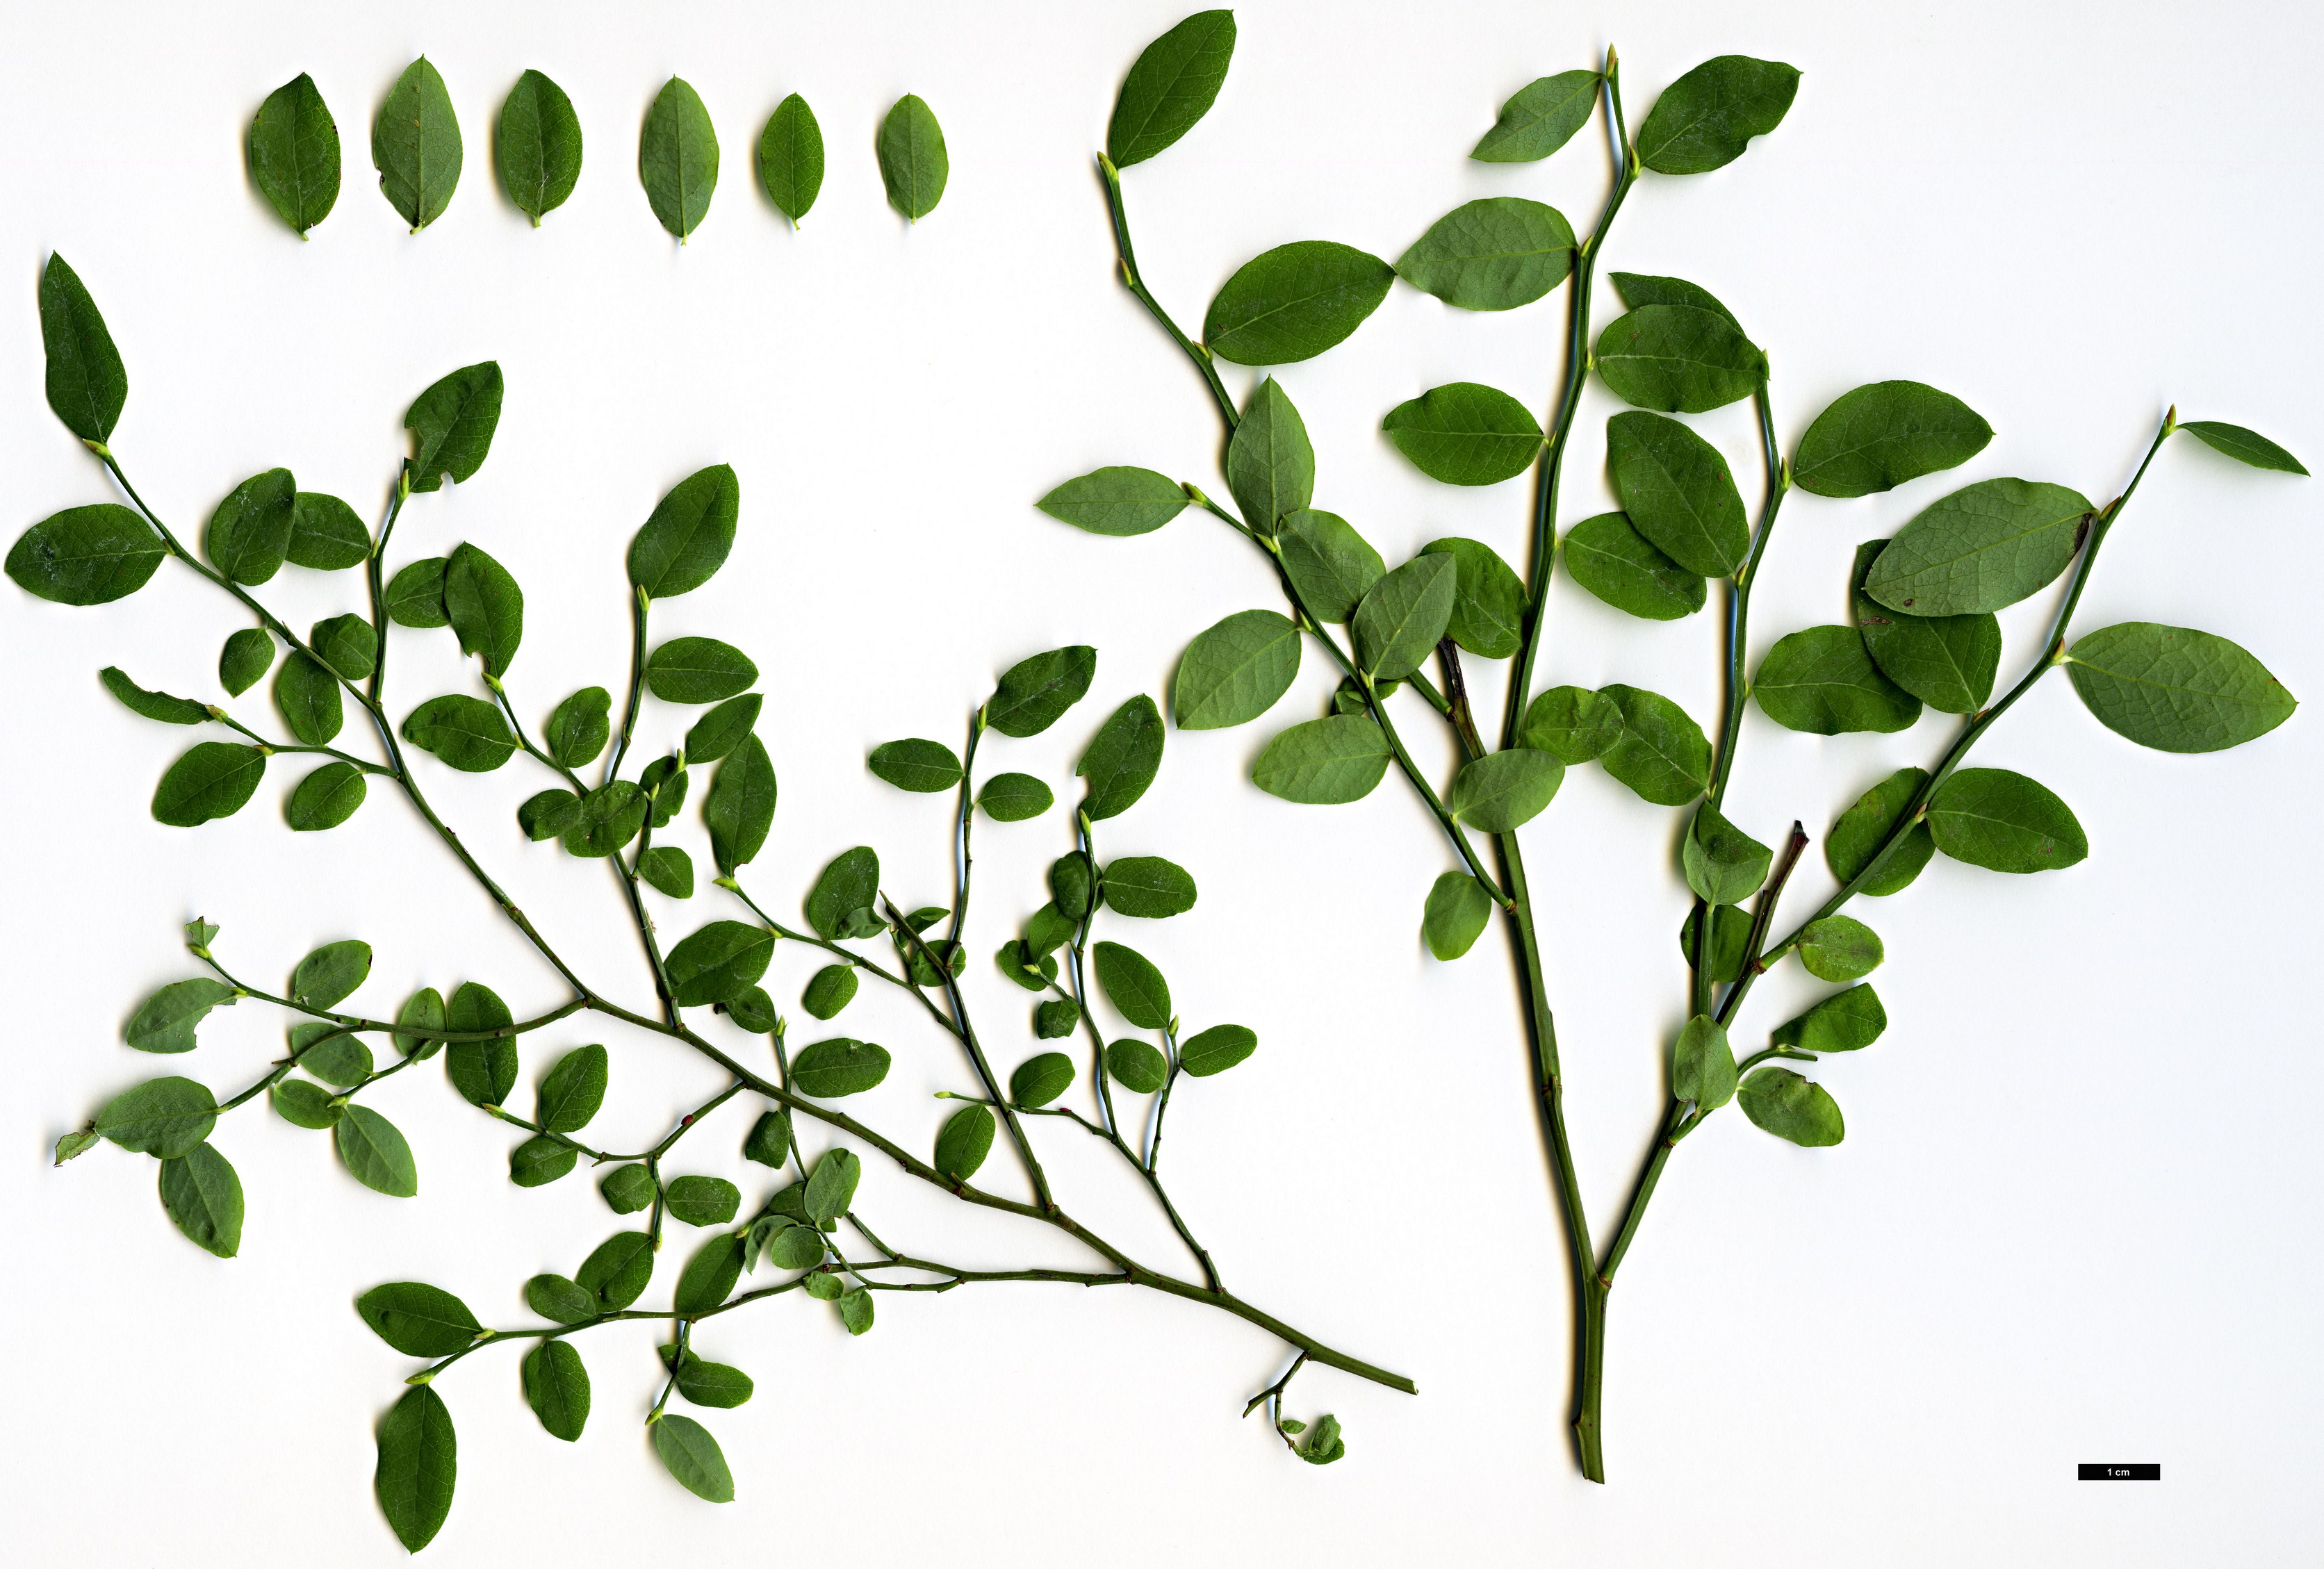 High resolution image: Family: Ericaceae - Genus: Vaccinium - Taxon: parvifolium